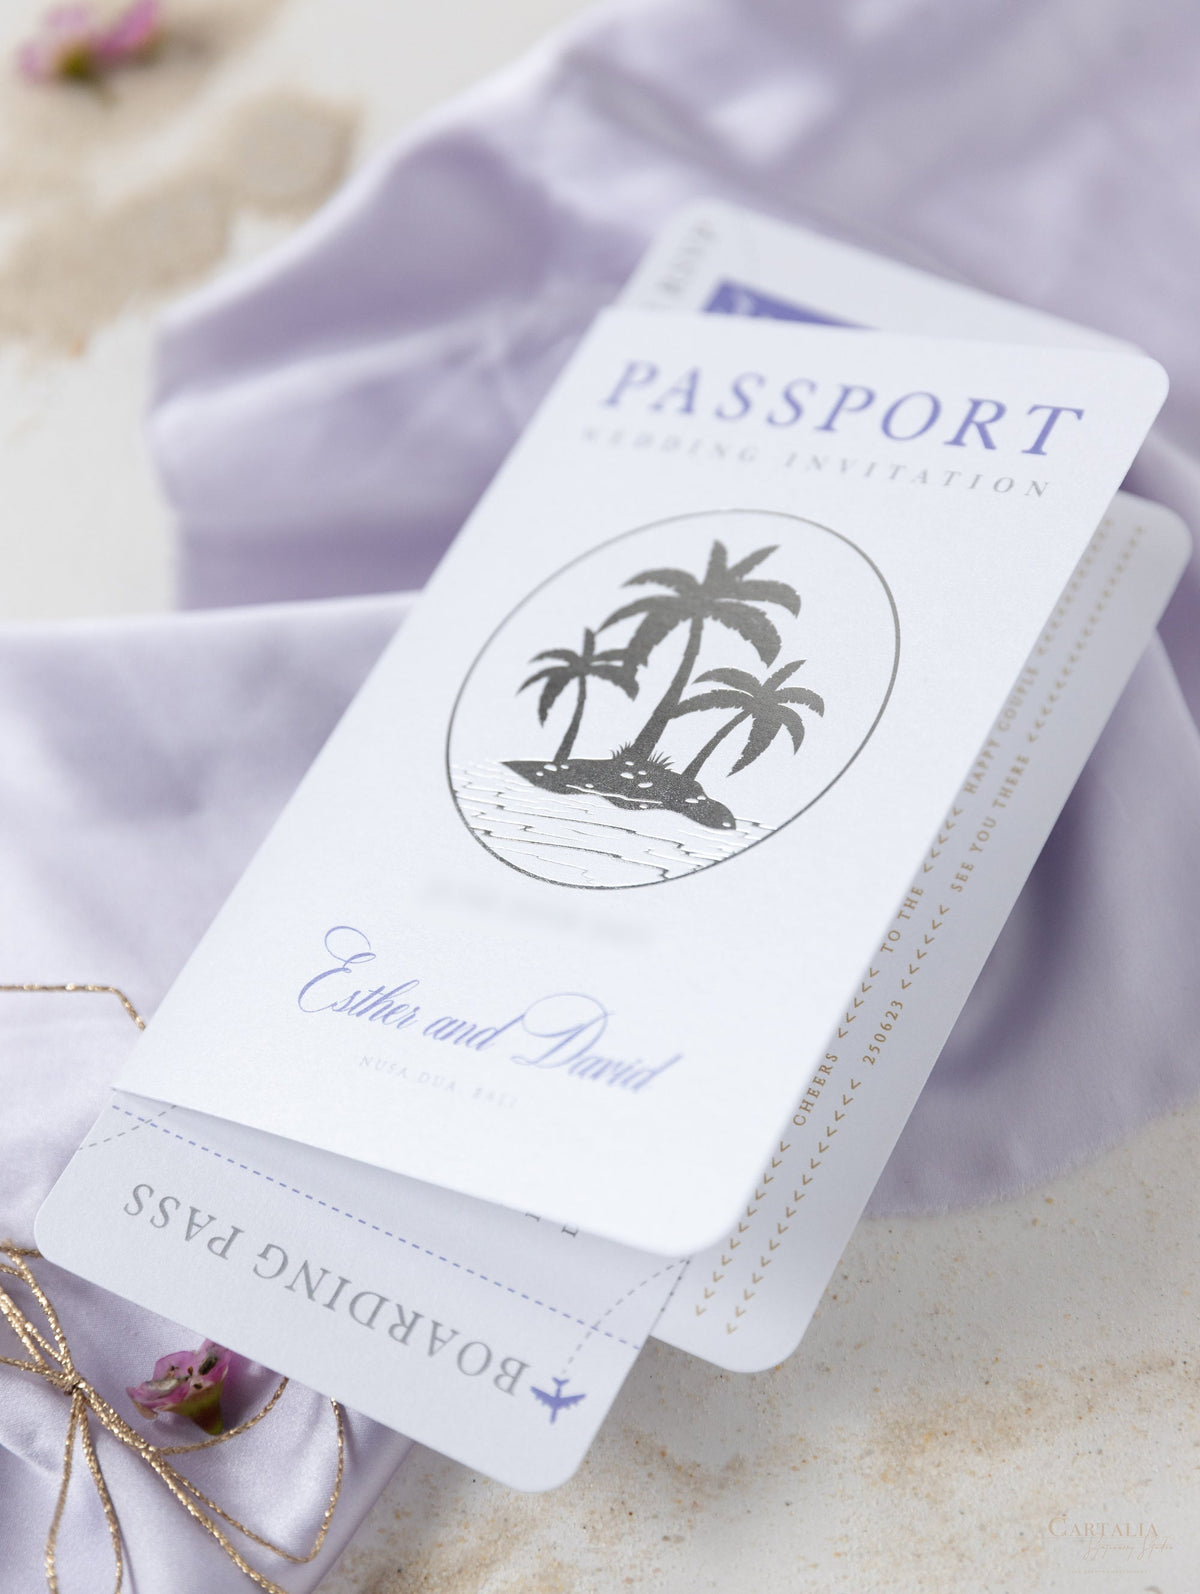 Portafoglio FOLDER lilla: invito per passaporto di nozze di lusso in argento in tasca e suite per invito per passaporto con tag aereo a specchio